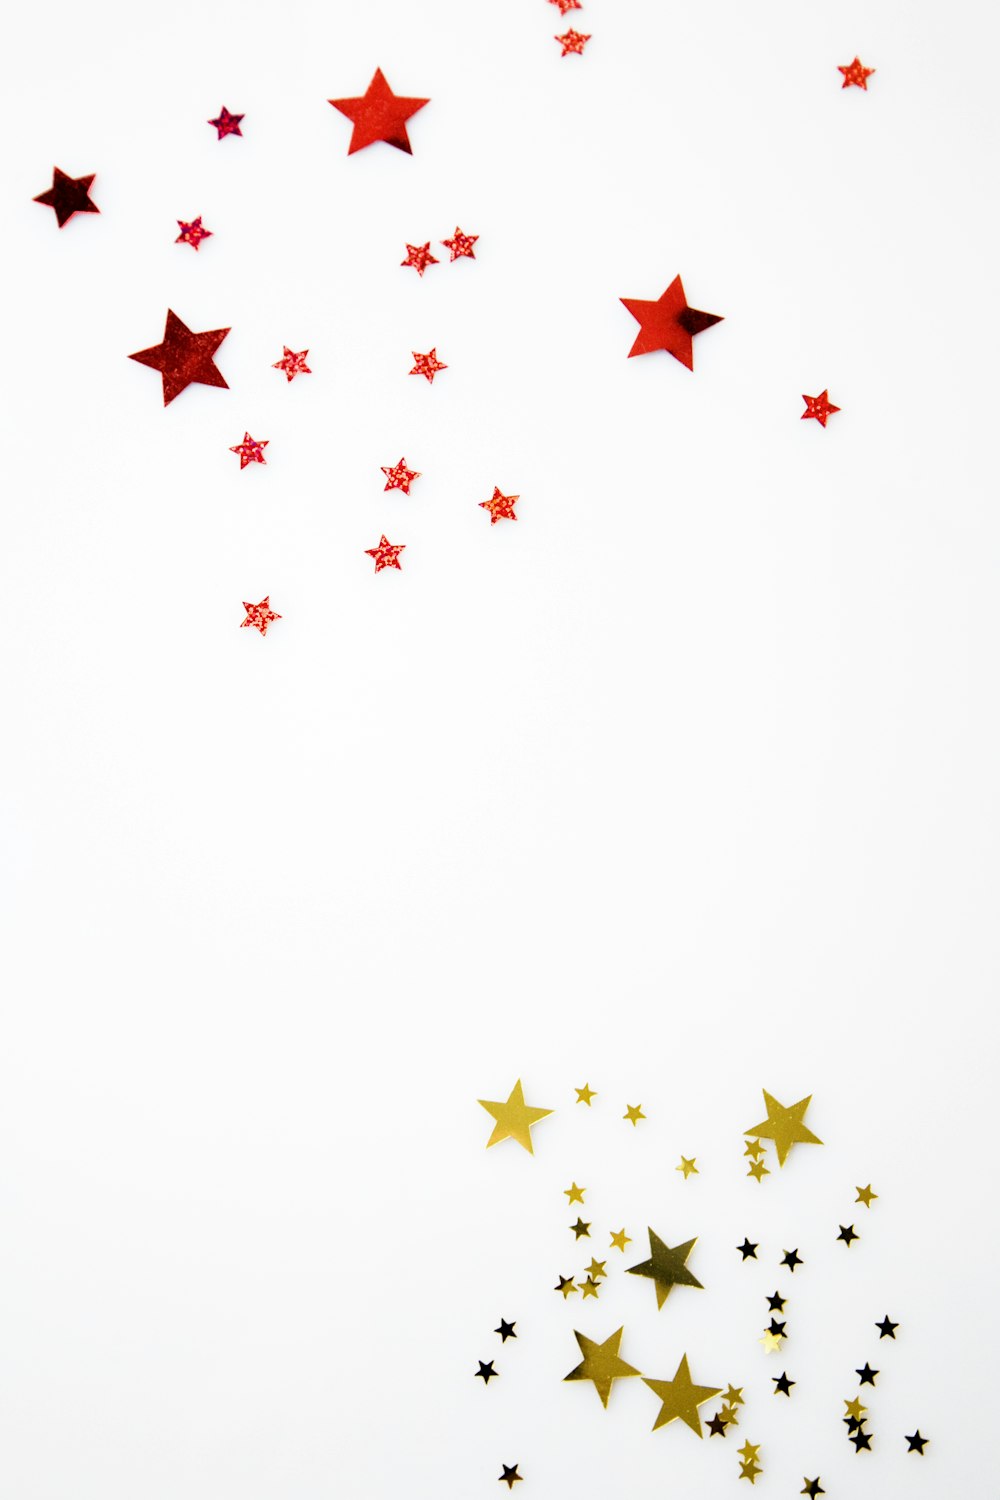 illustrazione della stella rossa e gialla